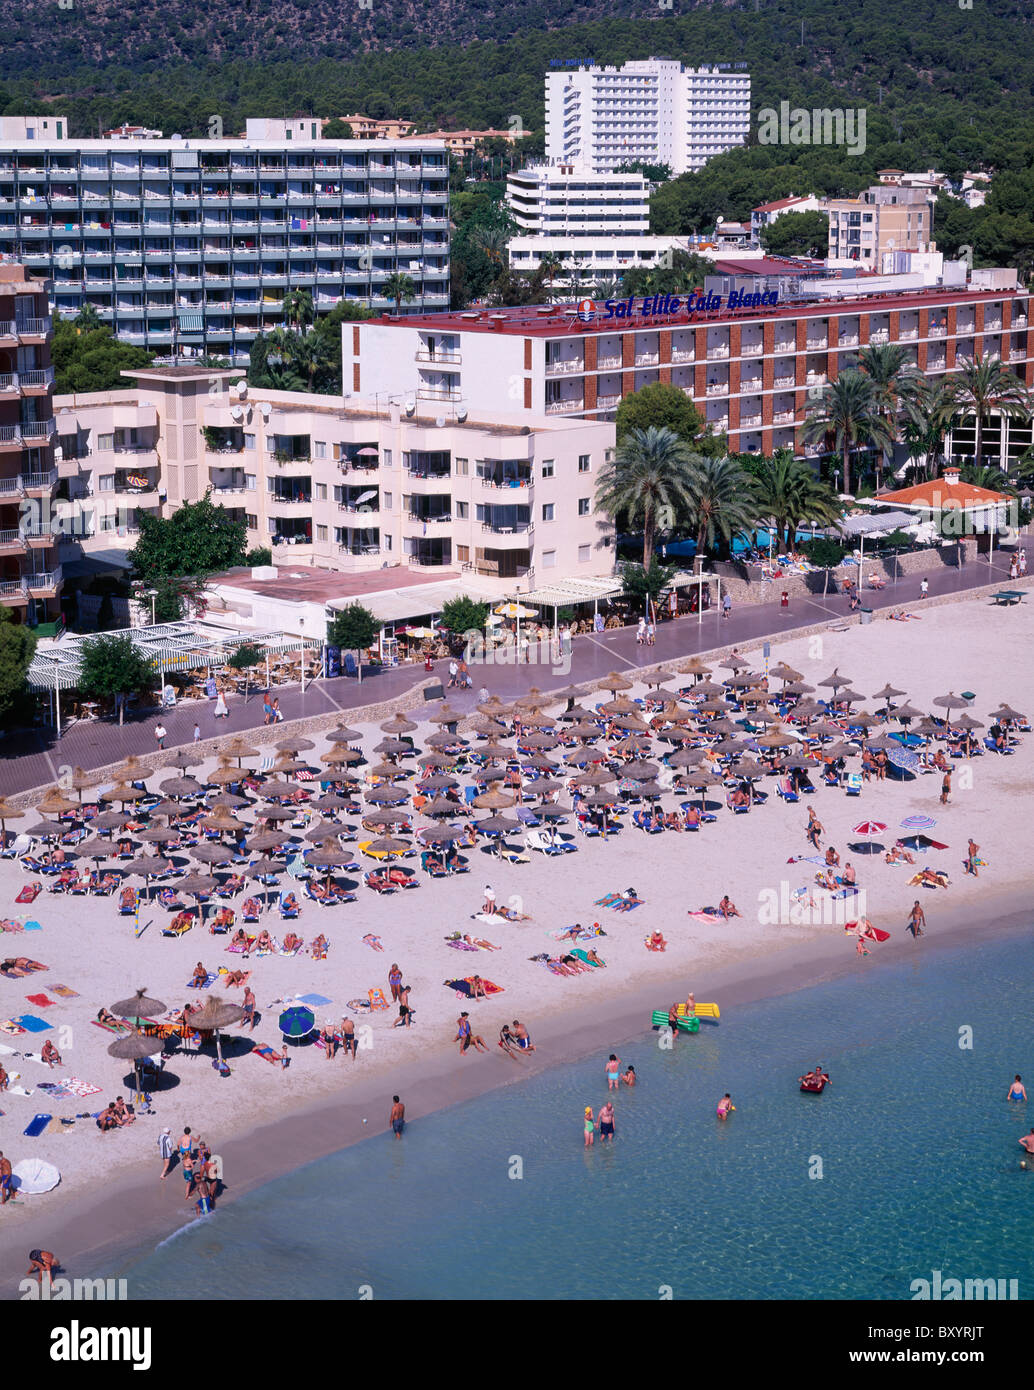 Palma Nova Beach, Majorca, Balearics, Spain Stock Photo